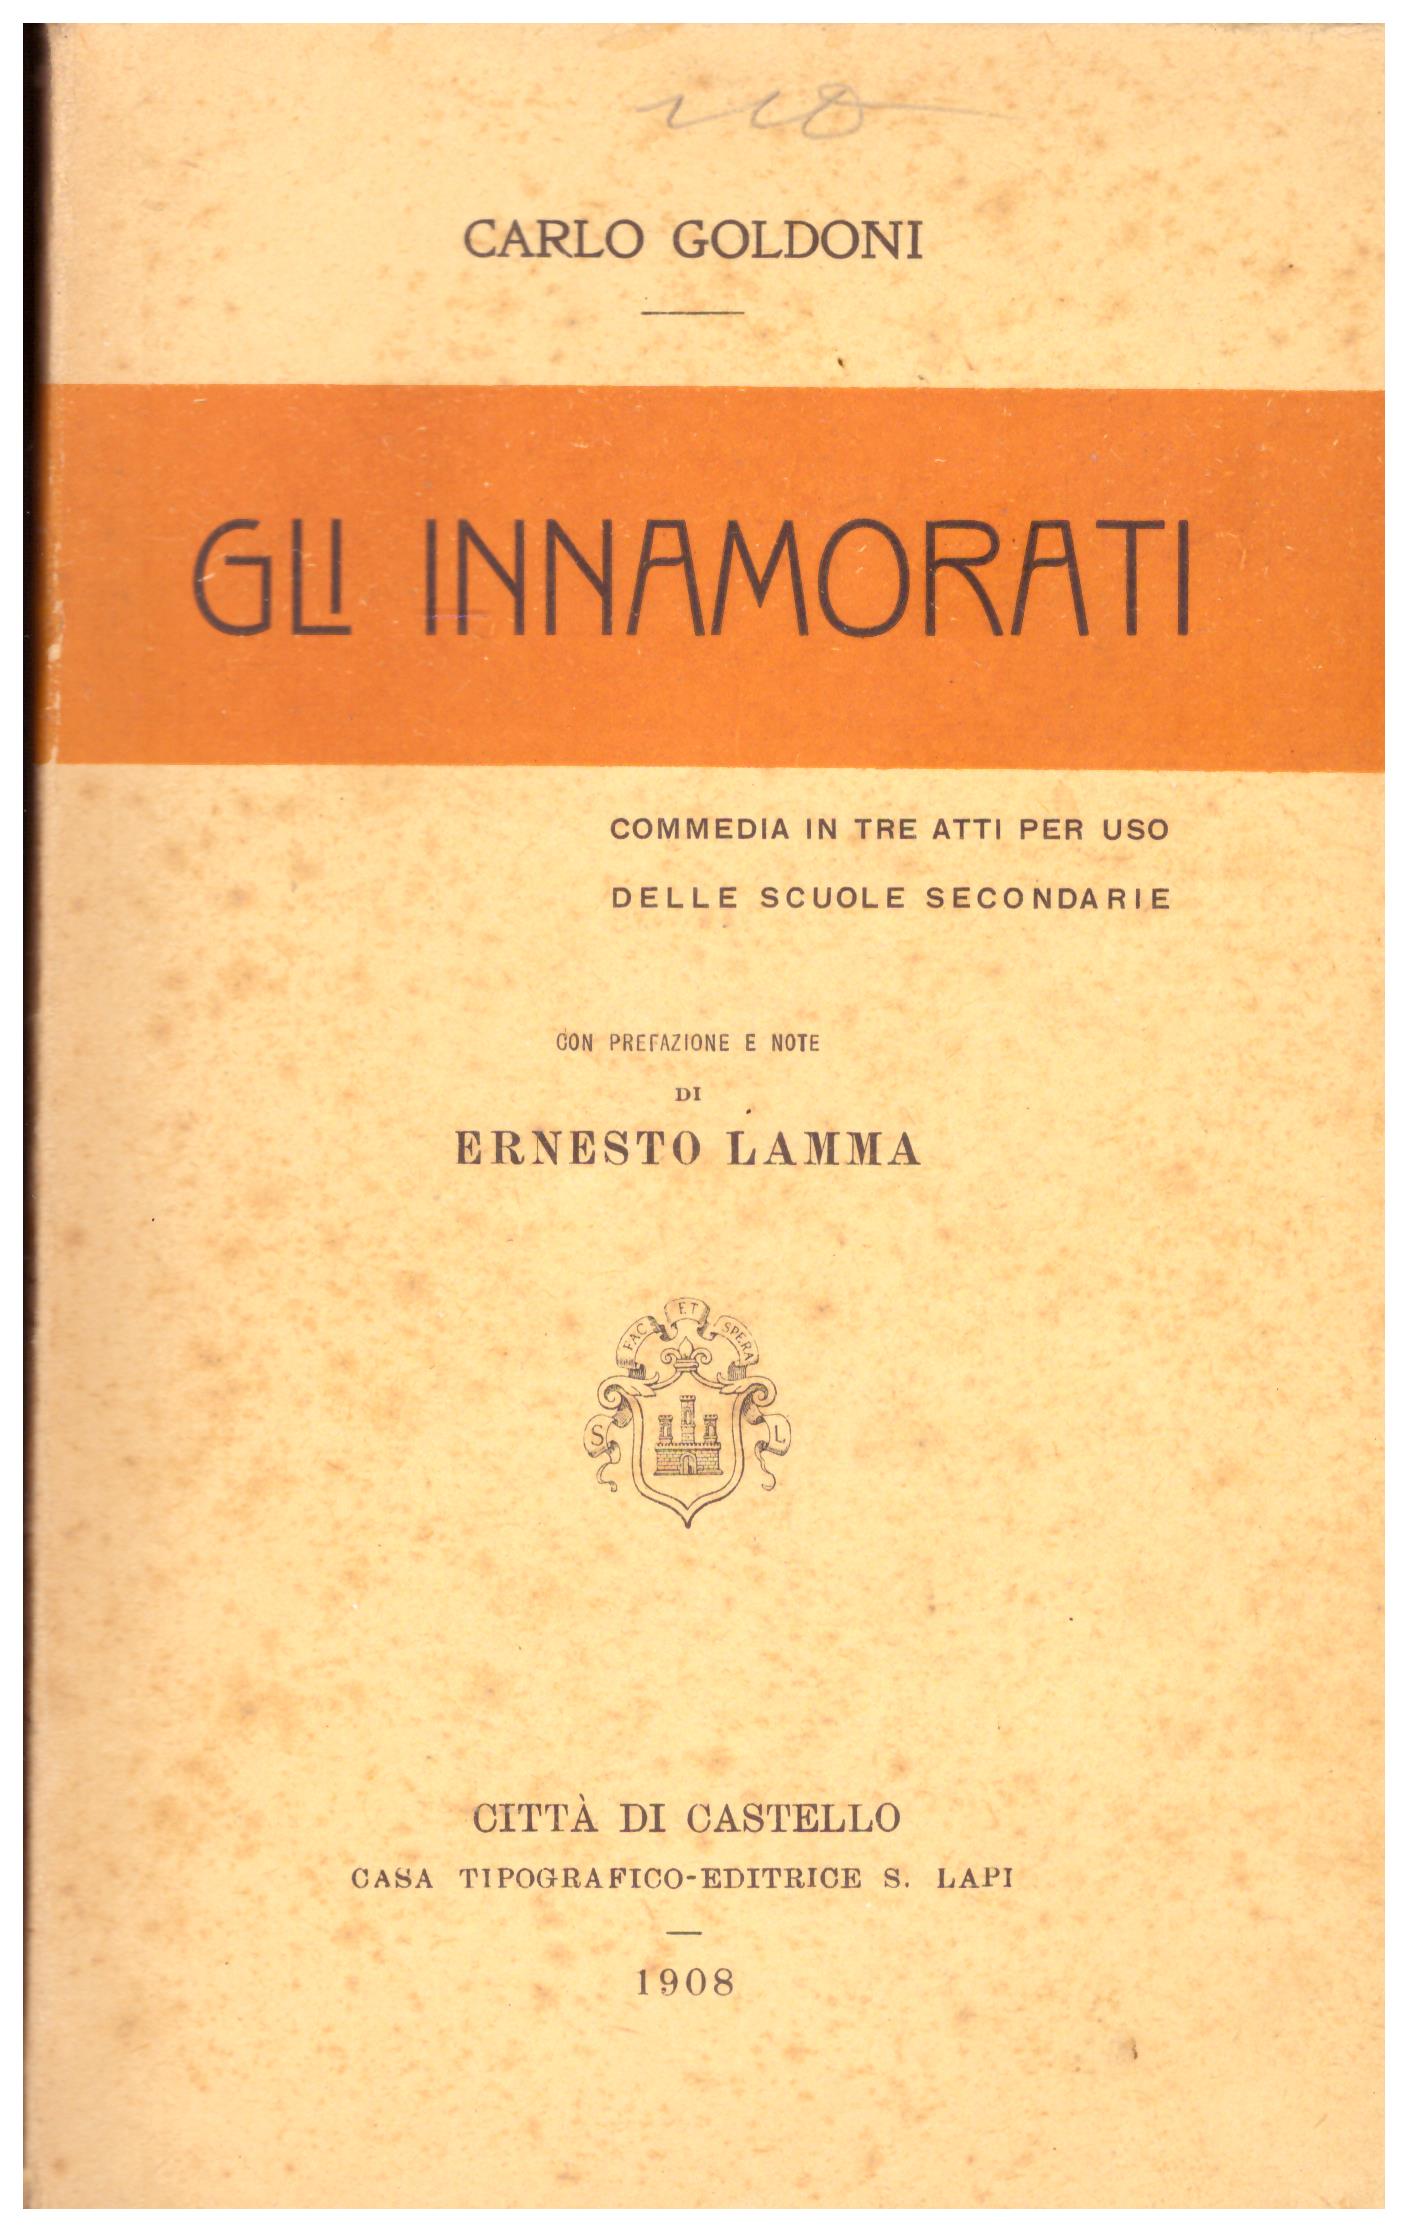 Titolo: Gli innamorati    Autore: Carlo Goldoni    Editore: casa tipografica-editrice S. Lapi, Città Di Castello 1908.